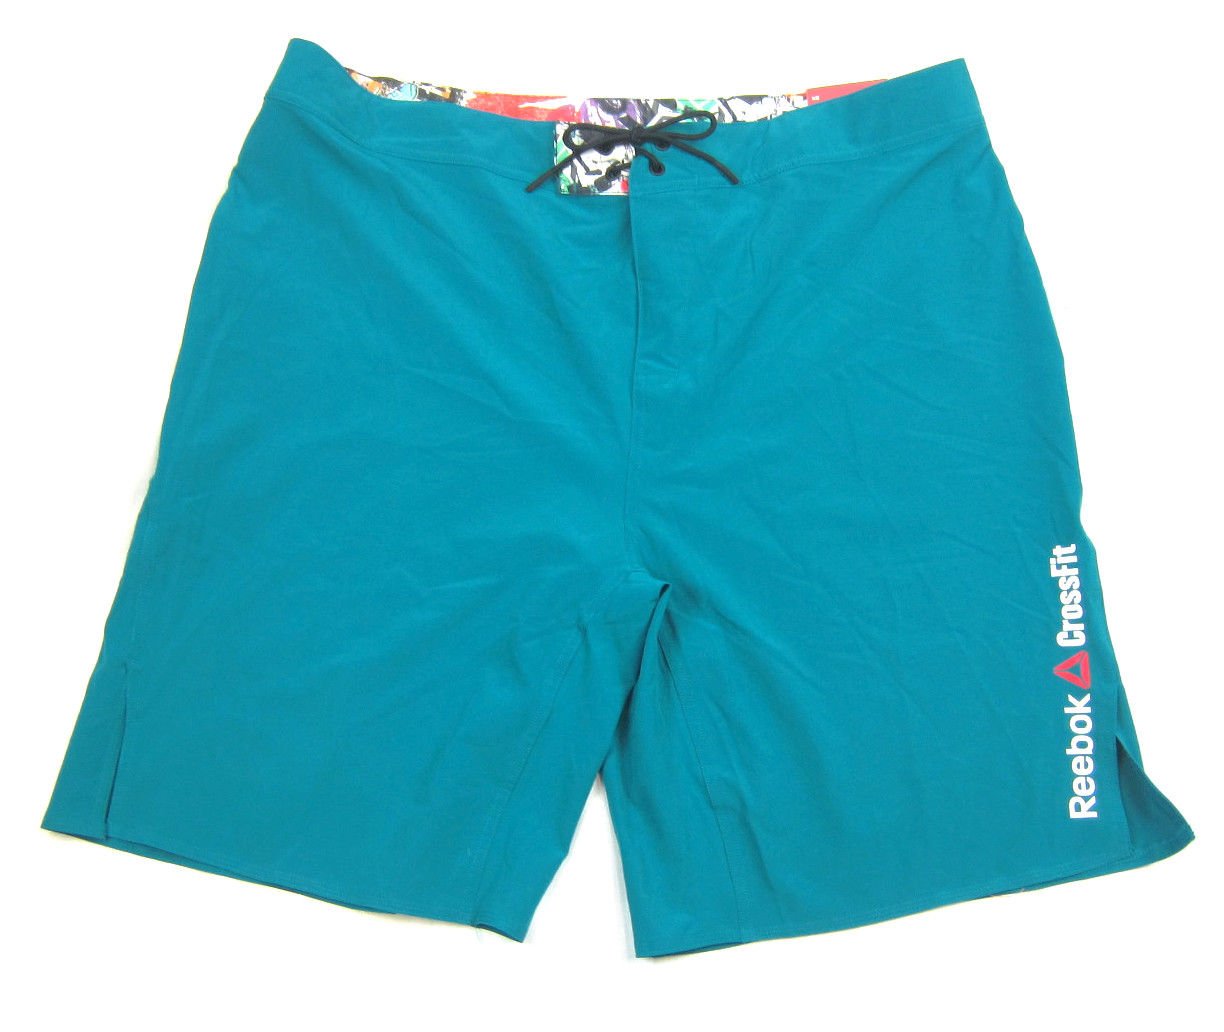 New Reebok CrossFit Men's Slim Fit Board Shorts Swimwear Teal Size 40 ...